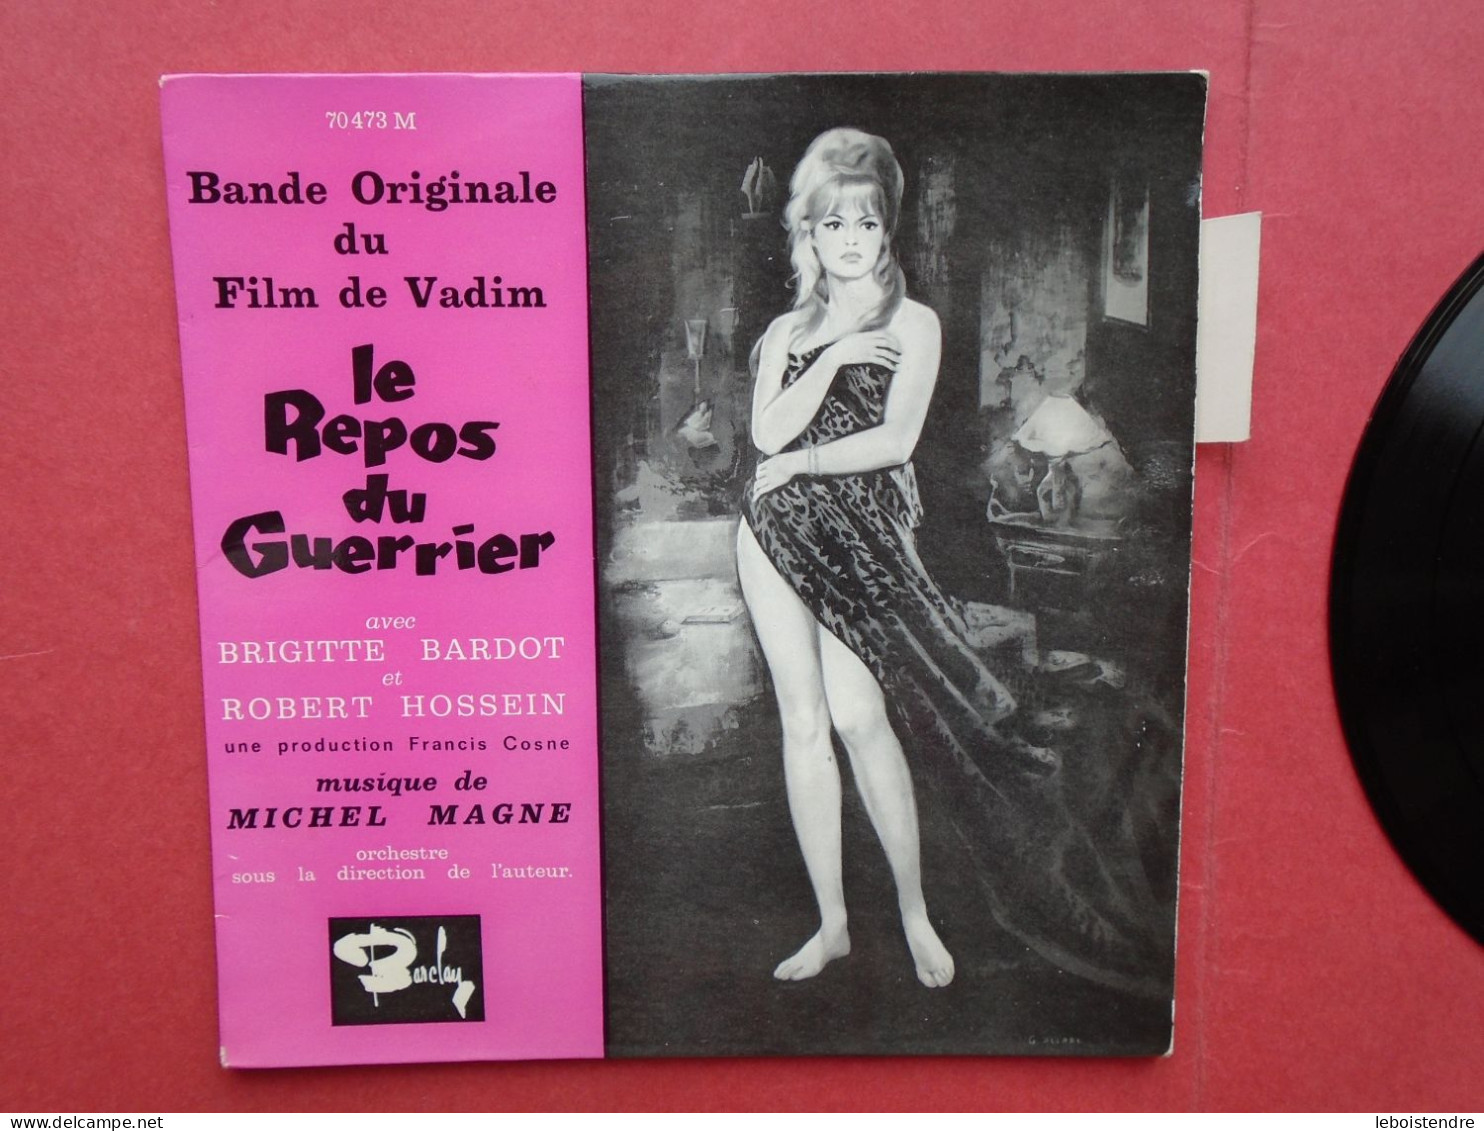 VINYLE 45T 7" LE REPOS DU GUERRIER 70473 LANGUETTE BIEM BANDE ORIGINALE DU FILM DE VADIM MICHEL MAGNE BRIGITTE BARDOT - Soundtracks, Film Music